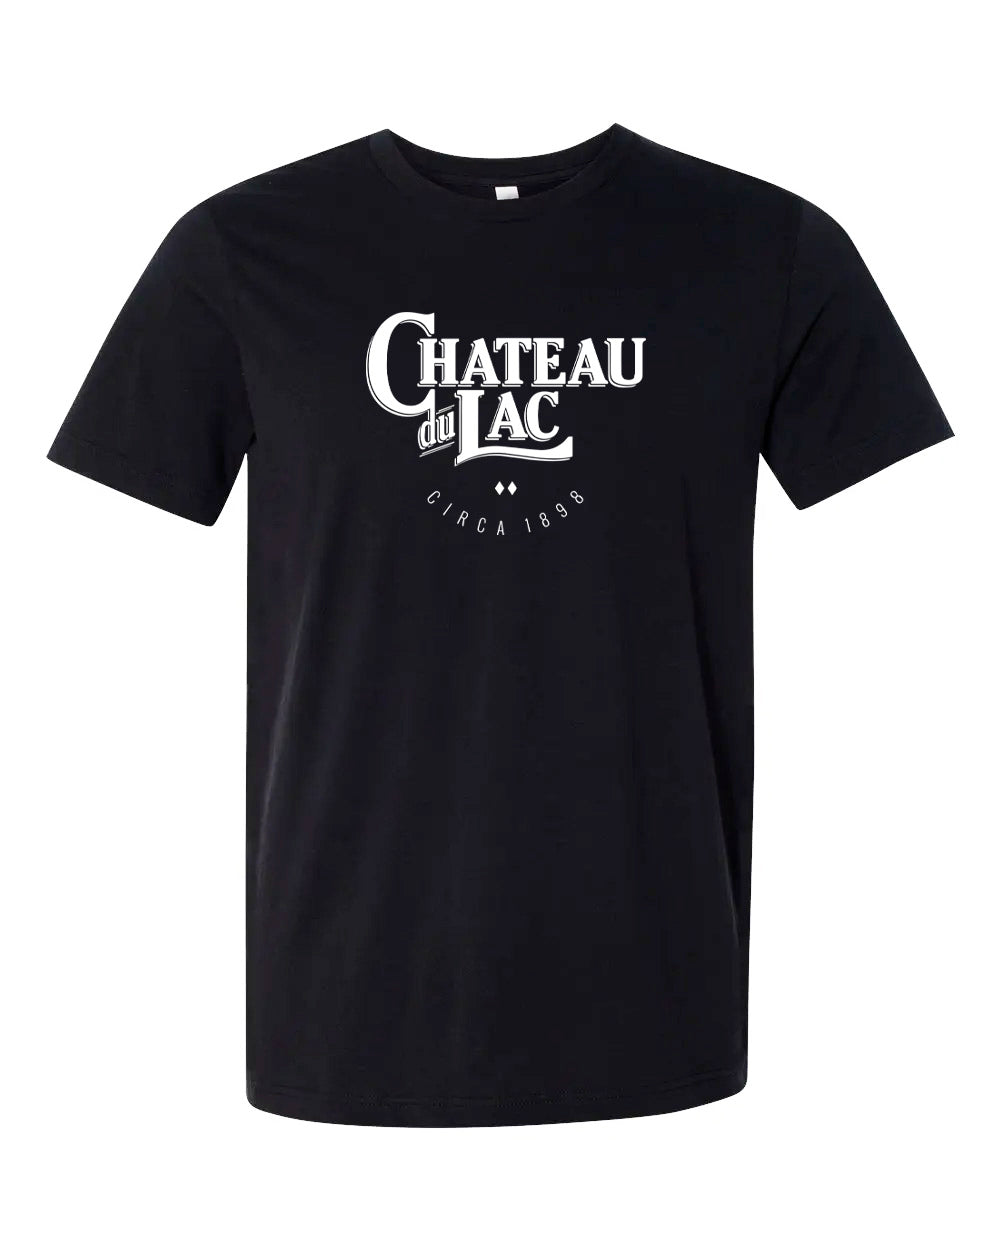 VINTAGE CHÂTEAU DU LAC SIGNATURE T-Shirts | Unsettled Apparel